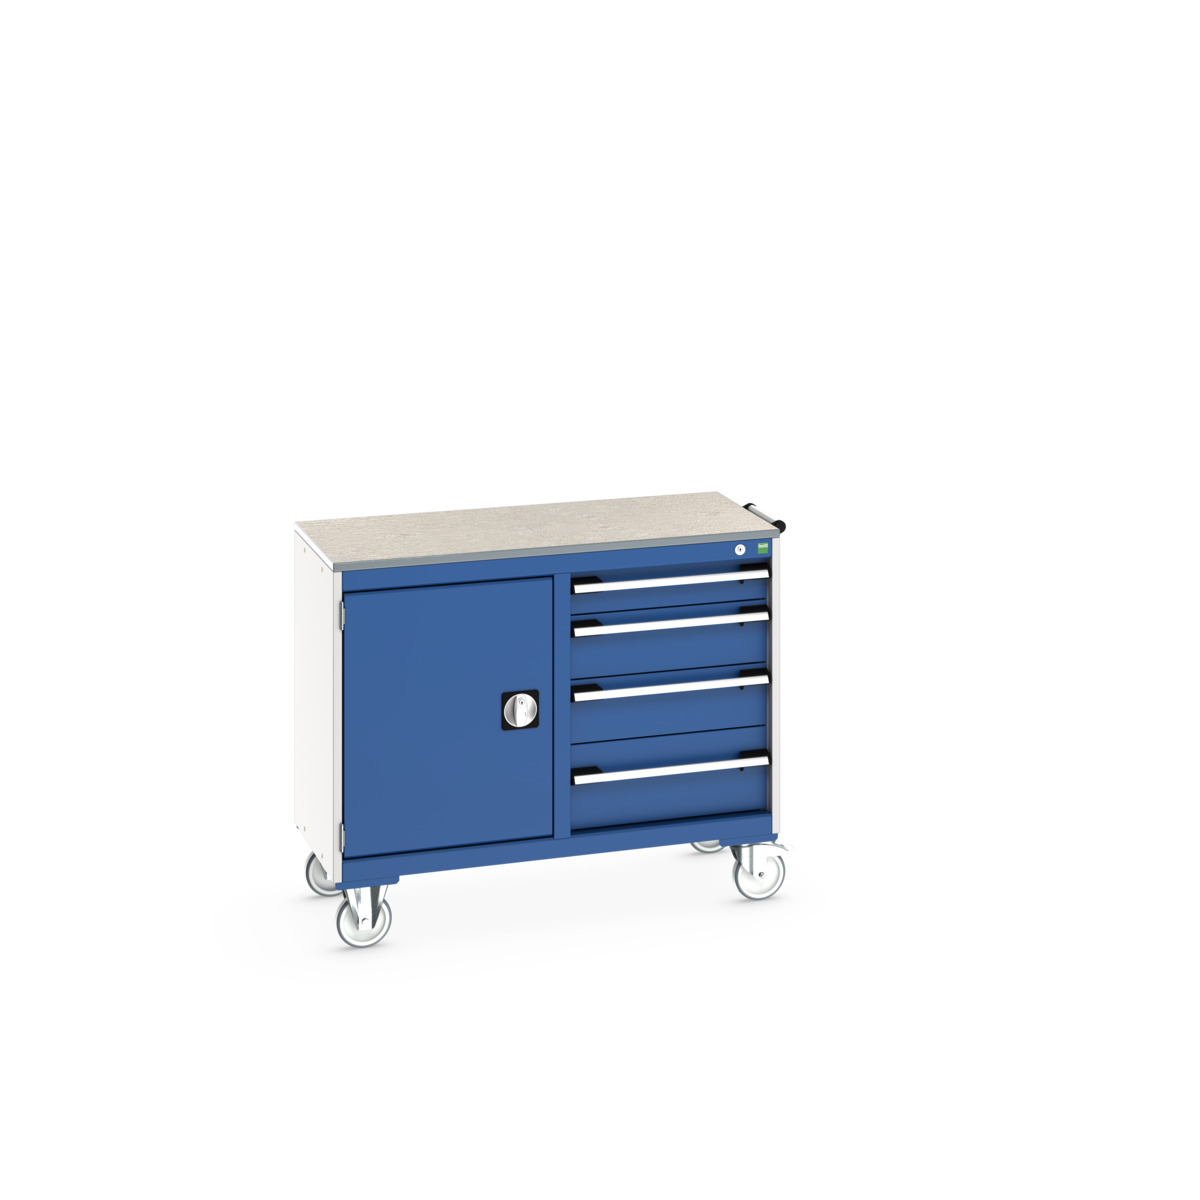 41006005.11V - cubio mobile cabinet 50/50 (lino)